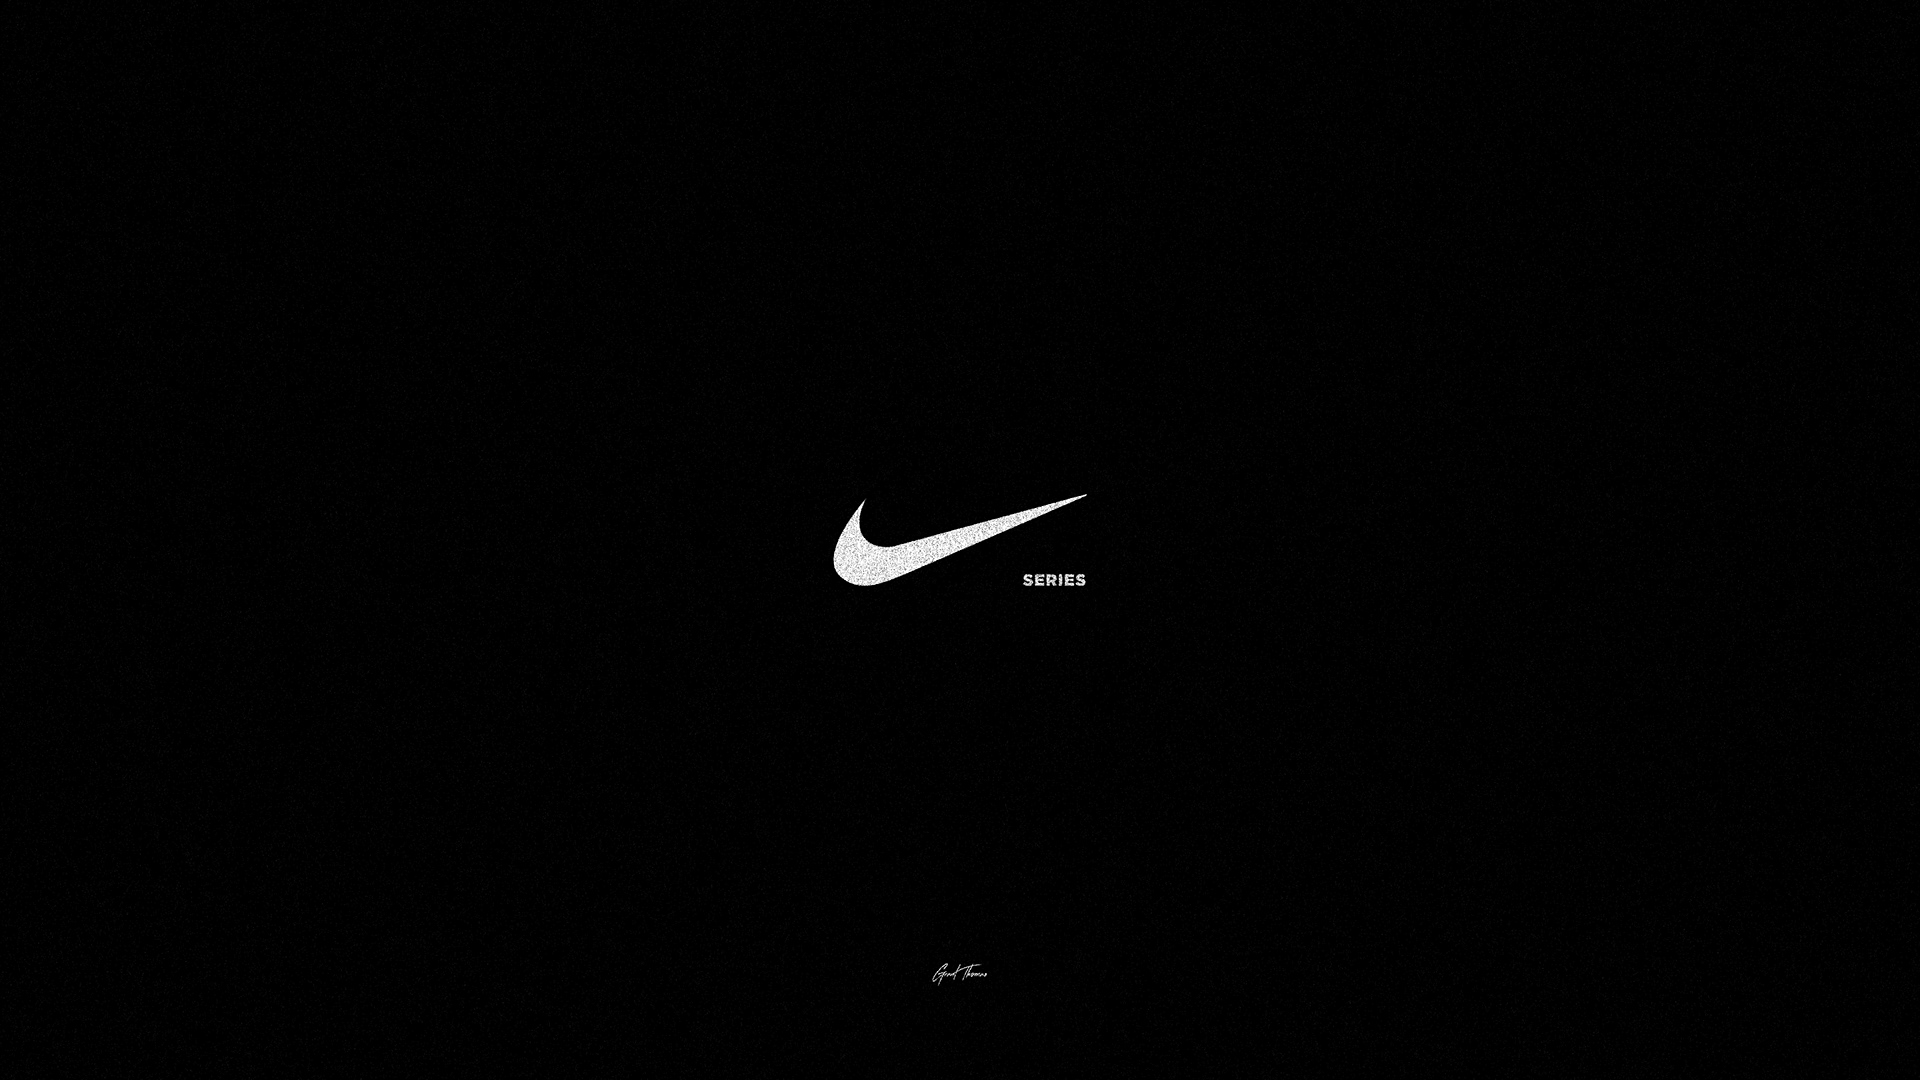 The Nike Series